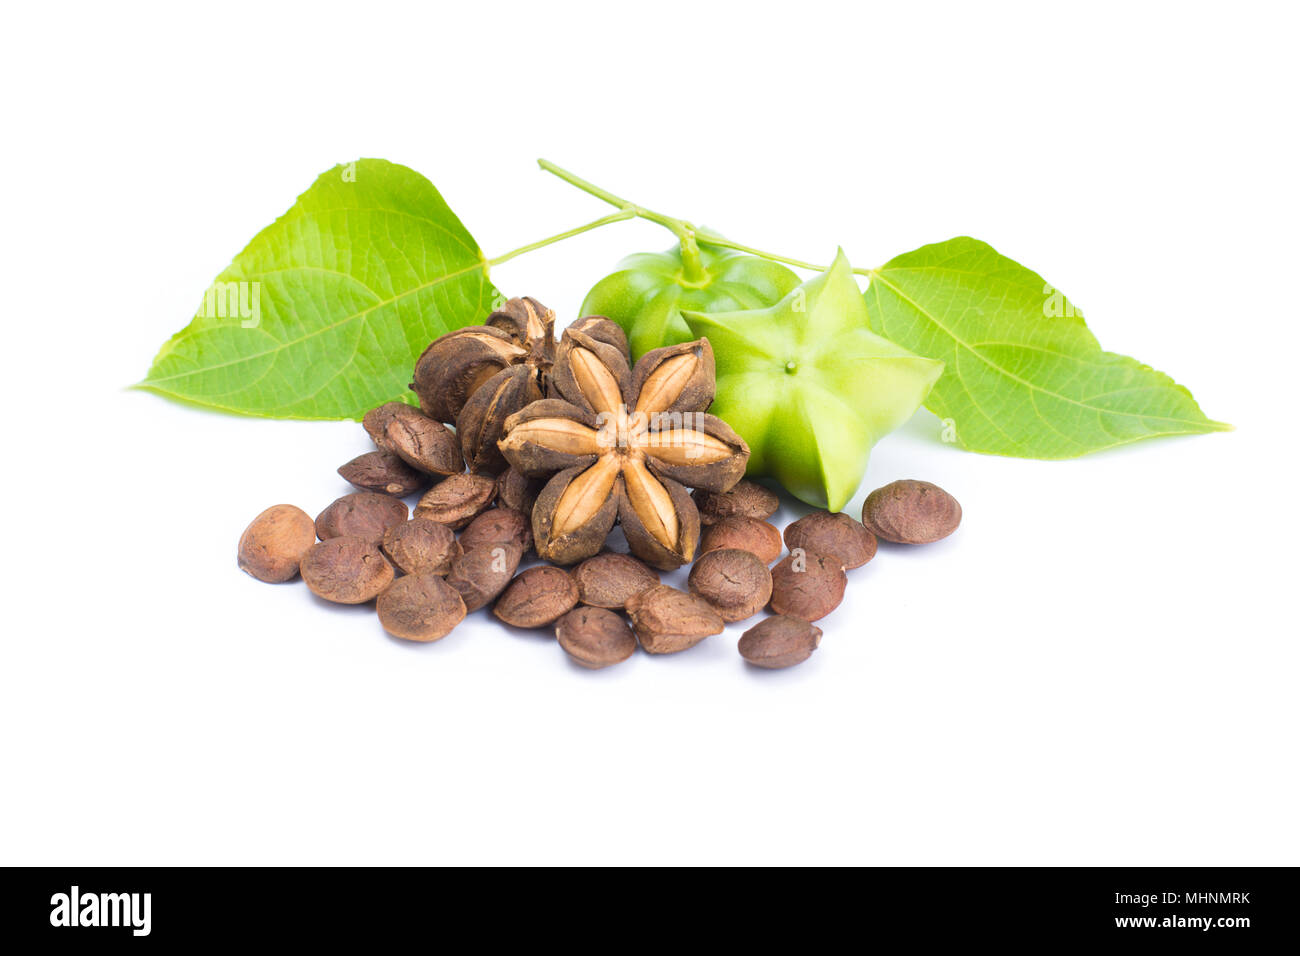 Plukenetia volubilis or sacha inchi peanut seed isolated on white background Stock Photo